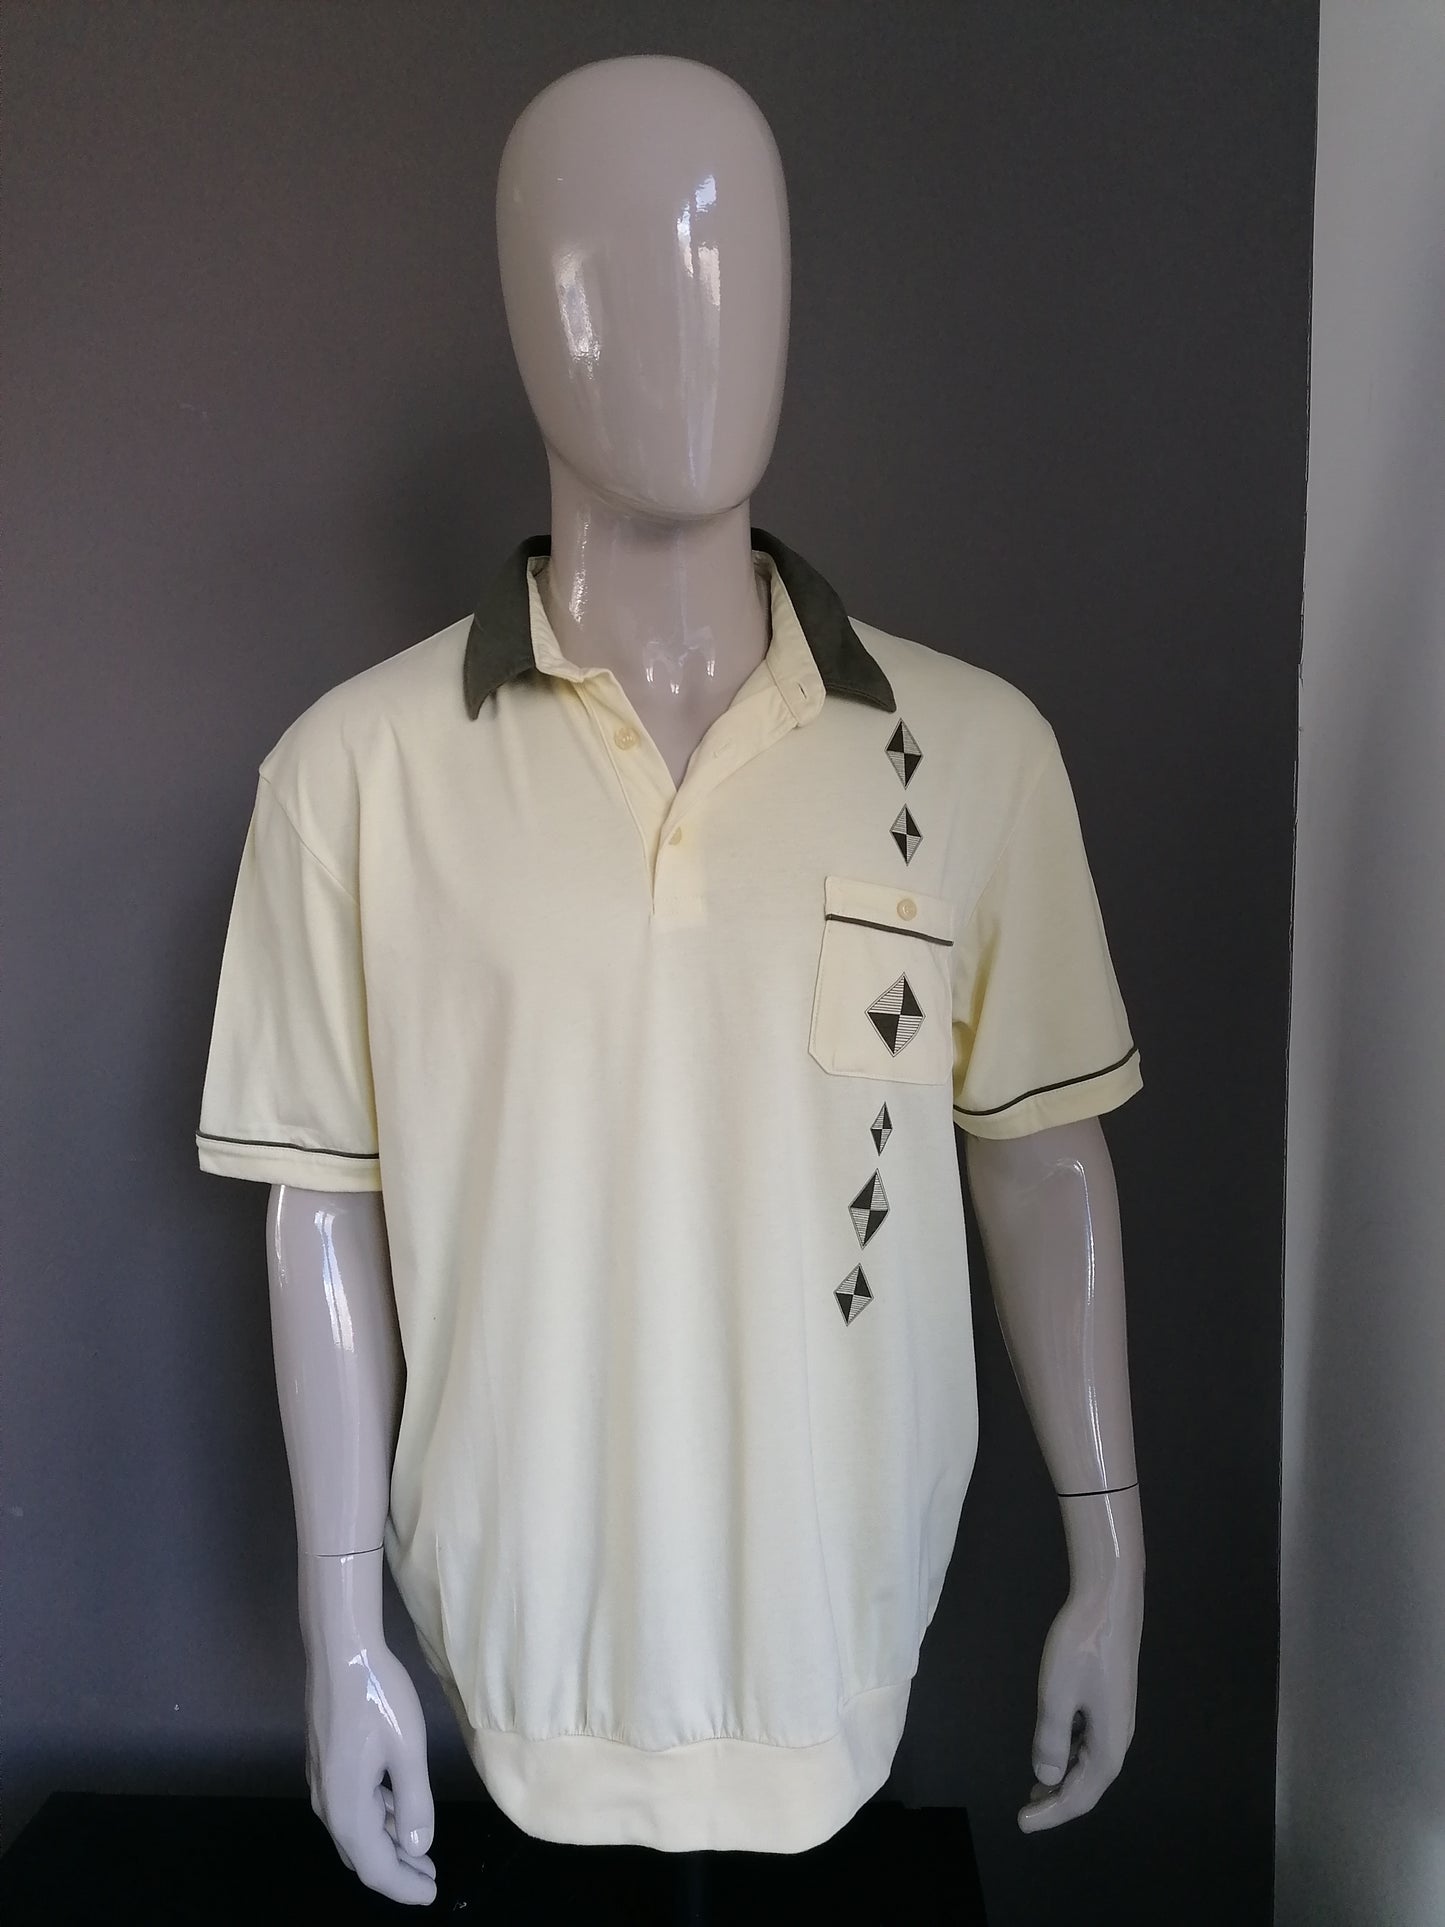 Vintage Roger kennt Polo mit Brusttasche und elastischem Band. Gelb grün gefärbt. Größe XL / XXL